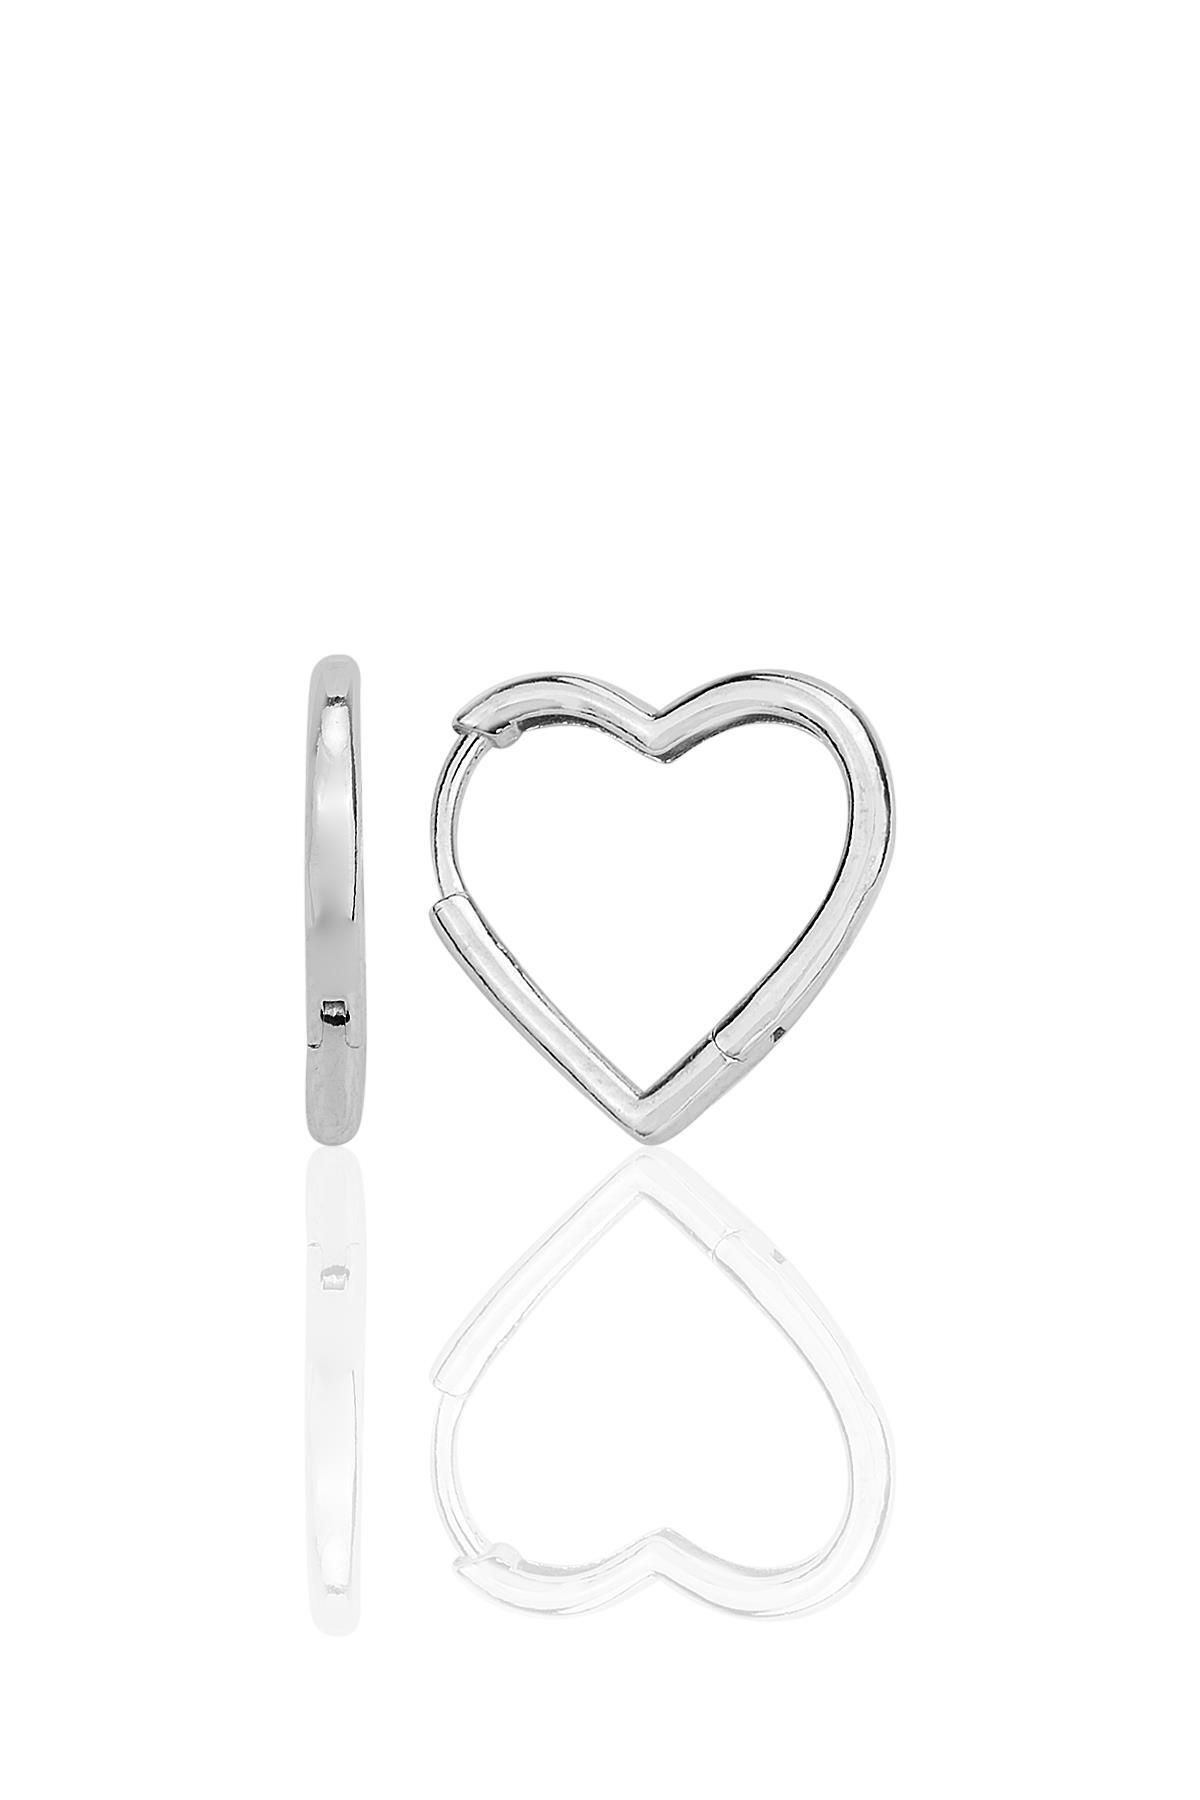 Söğütlü Silver Gümüş rodyumlu özel tasarım 16 mm kalp küpe SGTL12283RODAJ